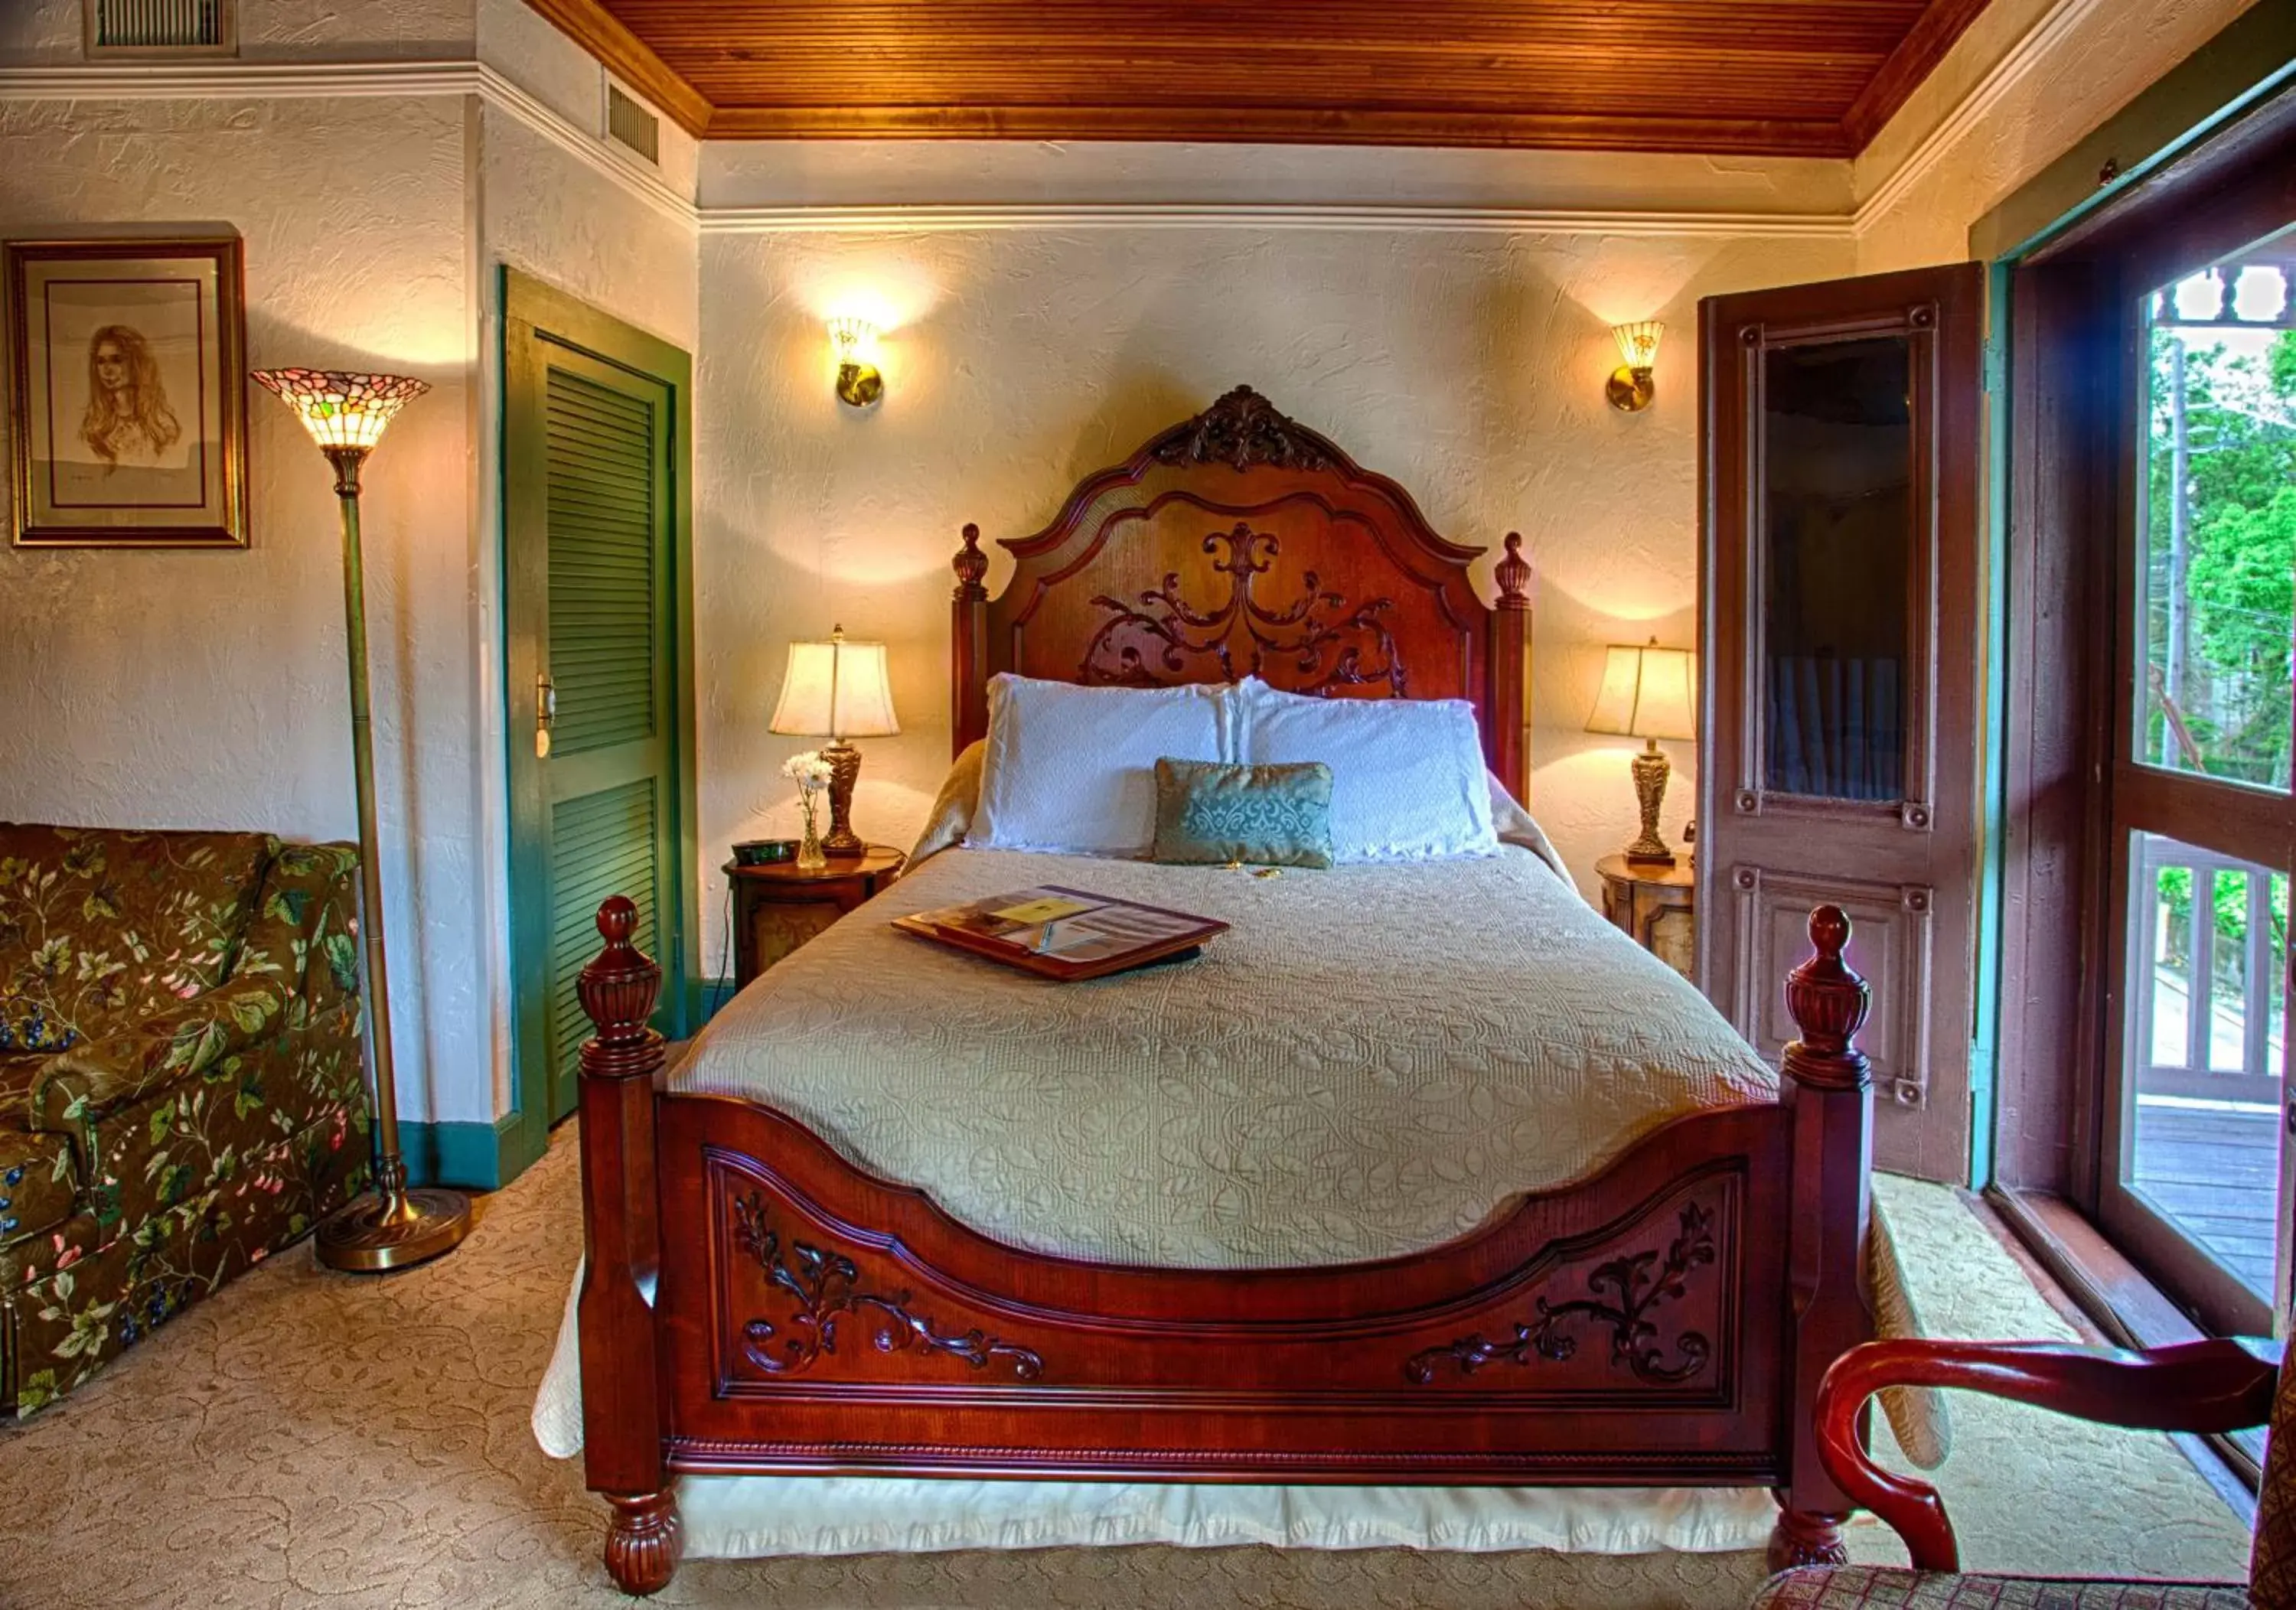 Bedroom, Room Photo in St. Francis Inn - Saint Augustine